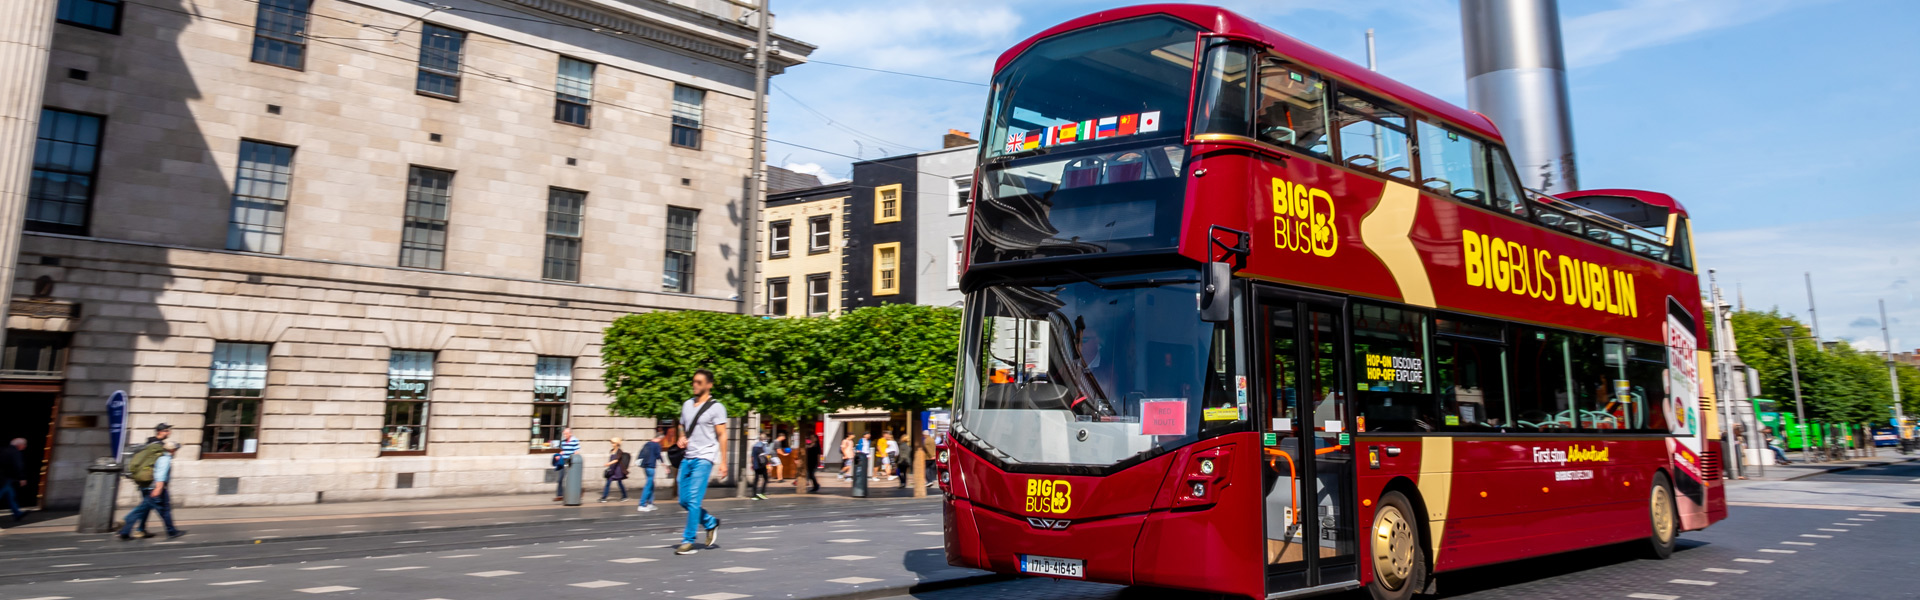 Big Bus Tours bus driving through Dublin